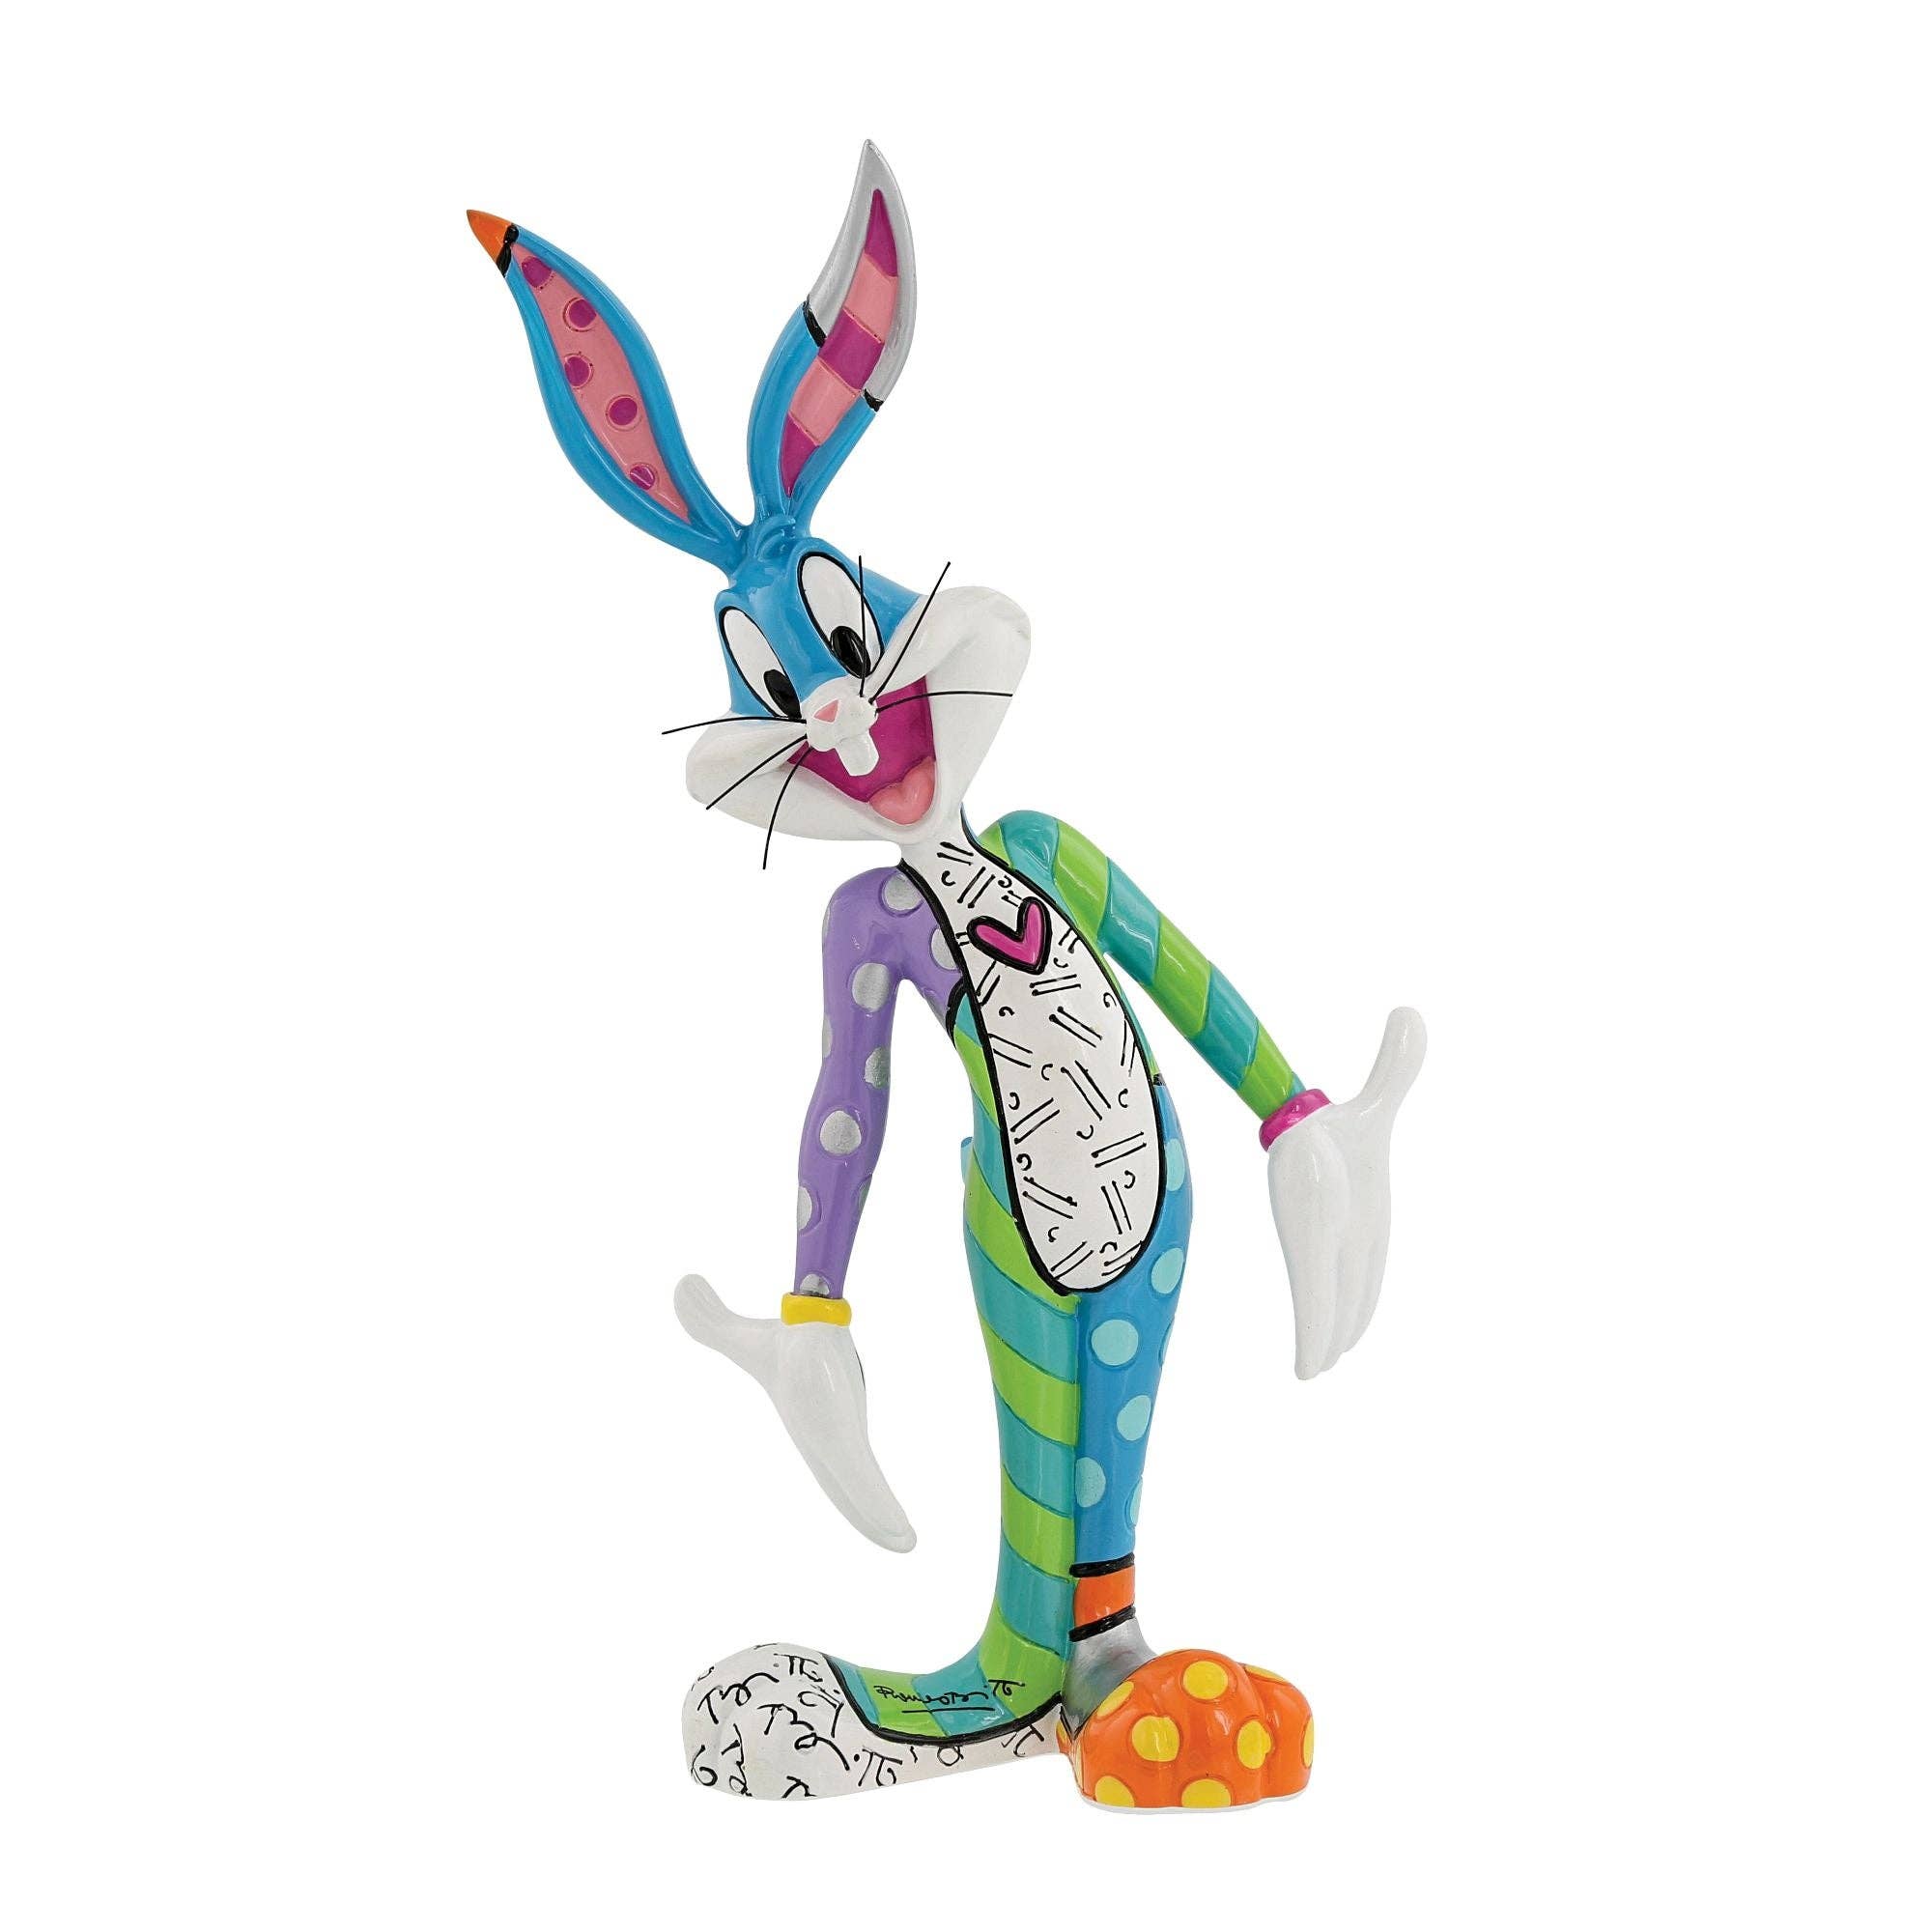 Bugs Bunny Figurine by Romero Britto